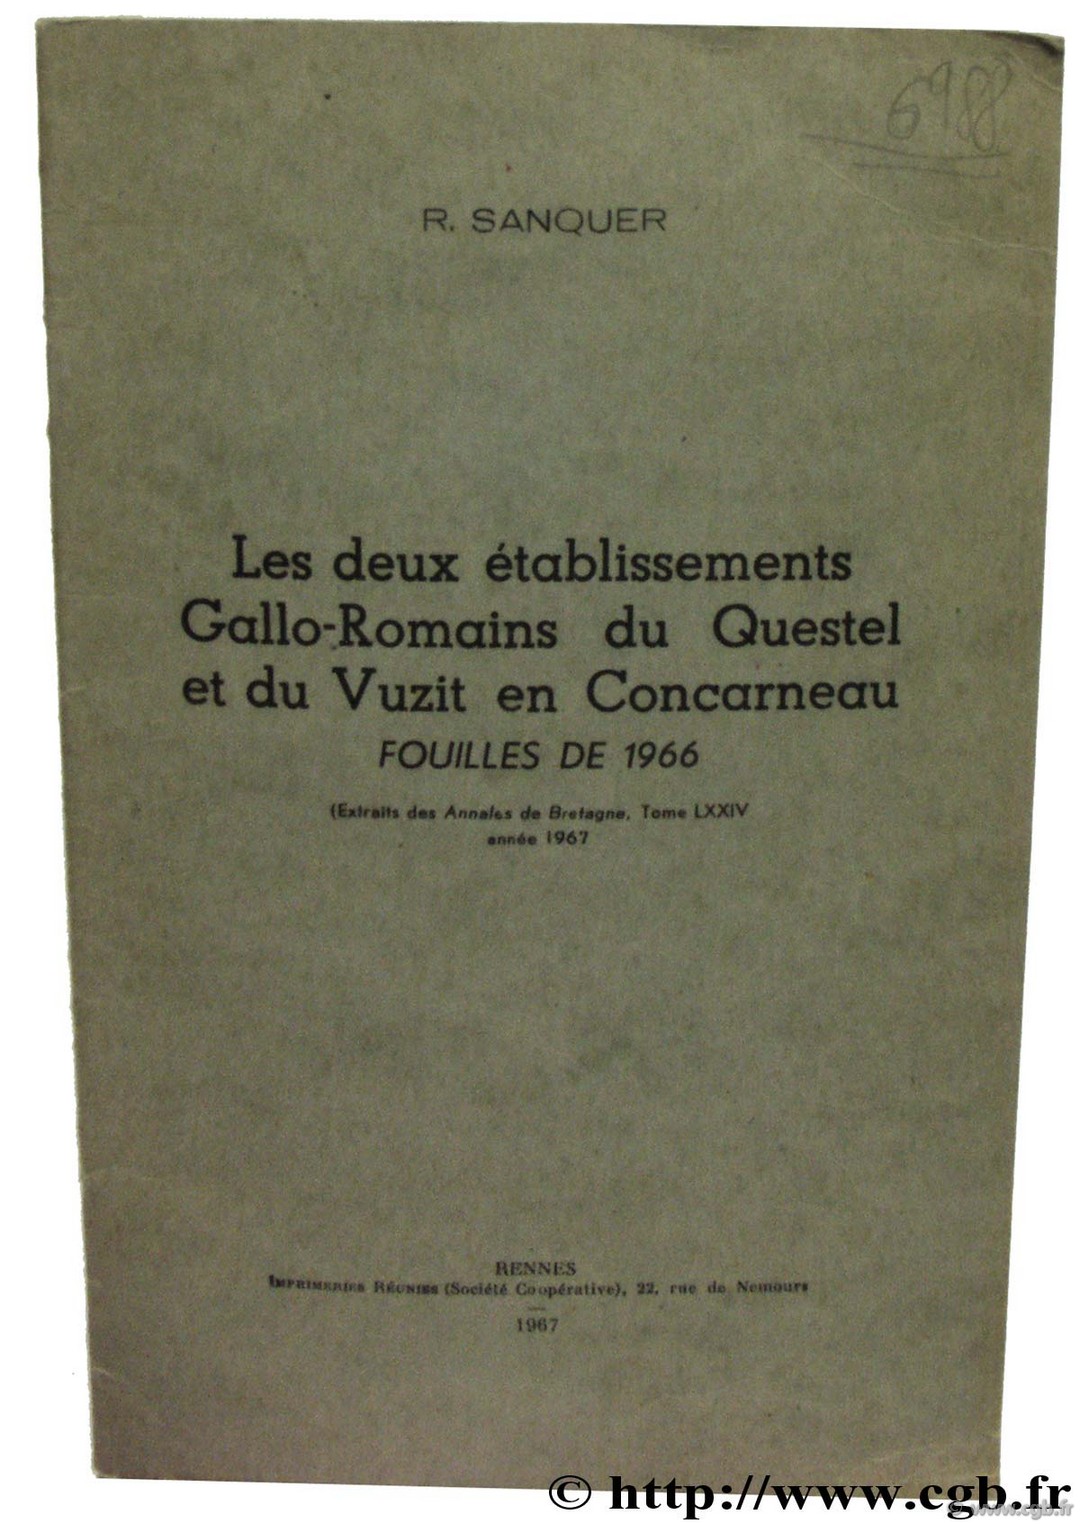 Les deux établissements Gallo-Romains du Questel et du Vuzit en Concarneau Fouilles de 1966 SANQUER R. 